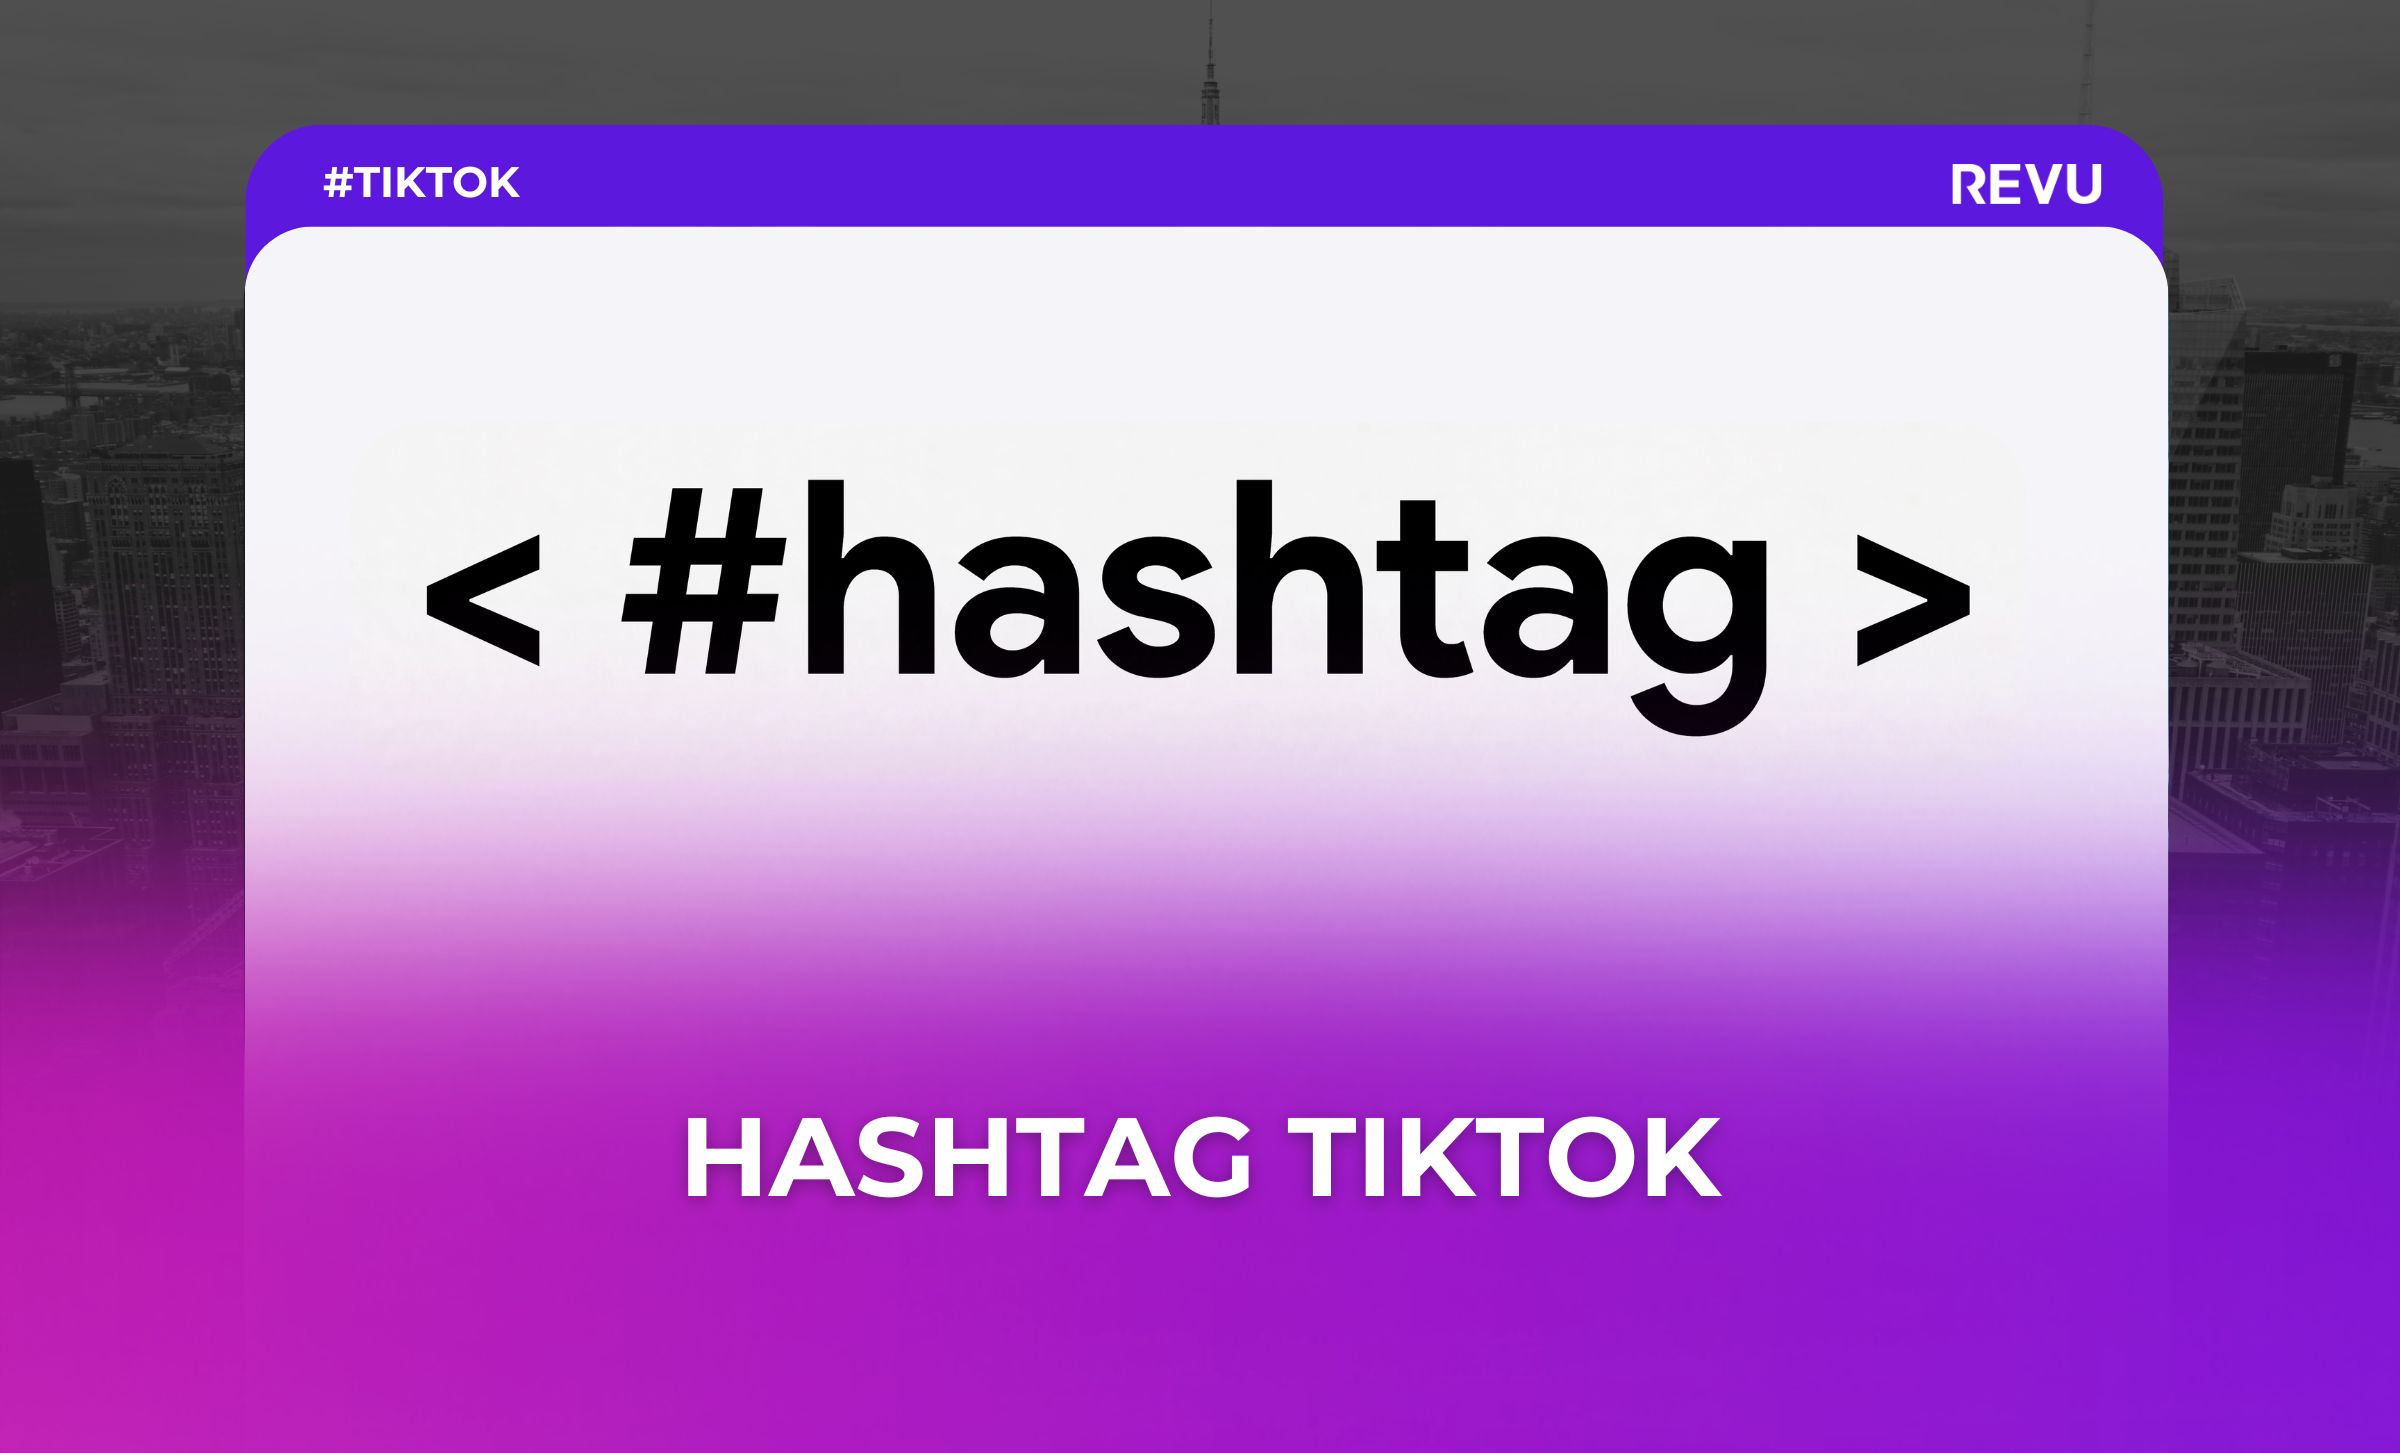 hashtag tiktok